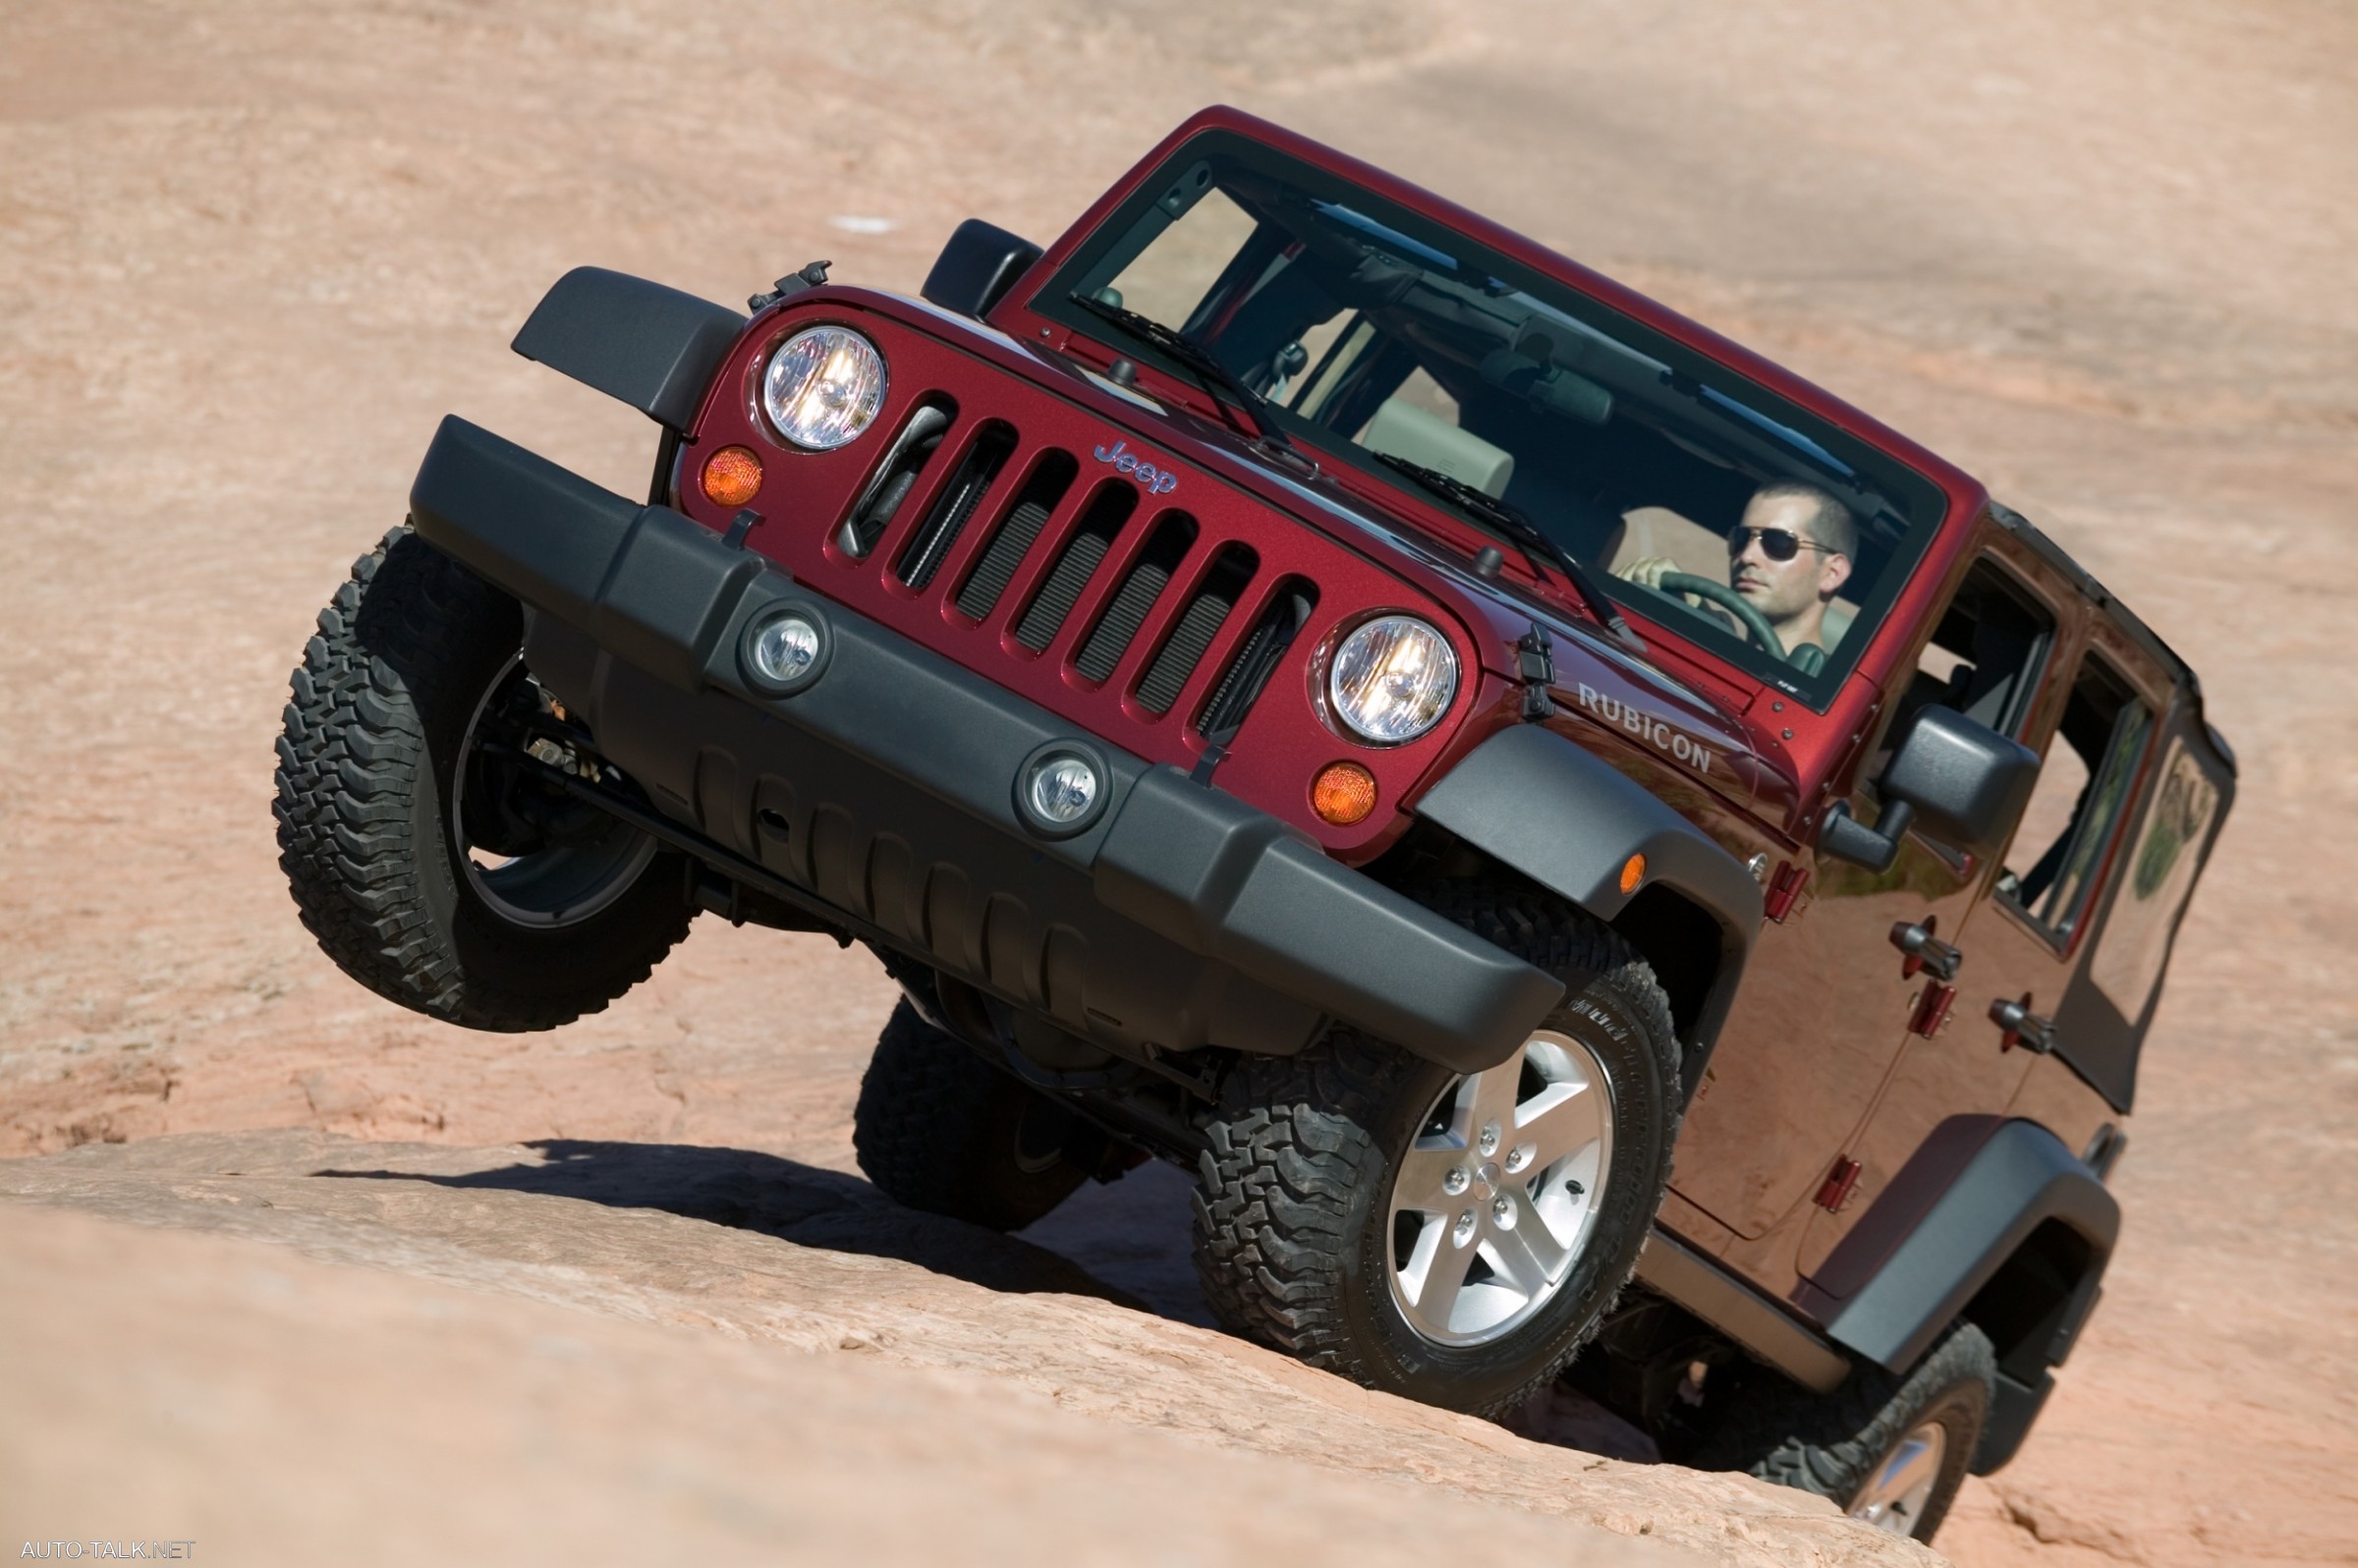 Jeep part. 2006 Jeep Wrangler JK. Jeep Wrangler 2007. Jeep Wrangler Unlimited 2007. Jeep Wrangler Unlimited JK Rubicon.